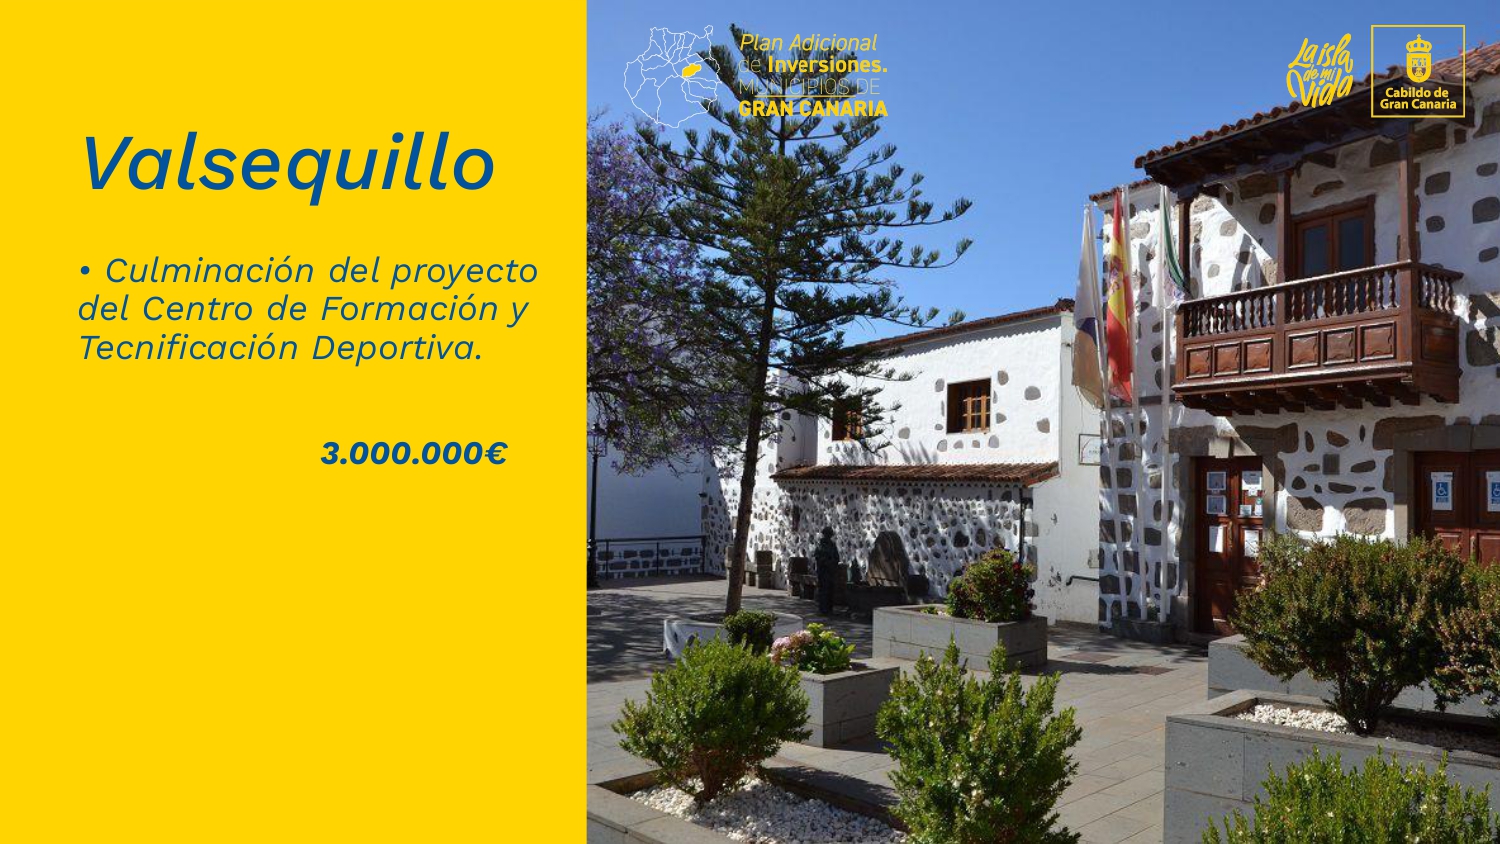 Featured image for “Valsequillo culminará el Centro de Formación y Tecnificación Deportiva con el Plan Adicional de Inversiones del Cabildo de Gran Canaria.”